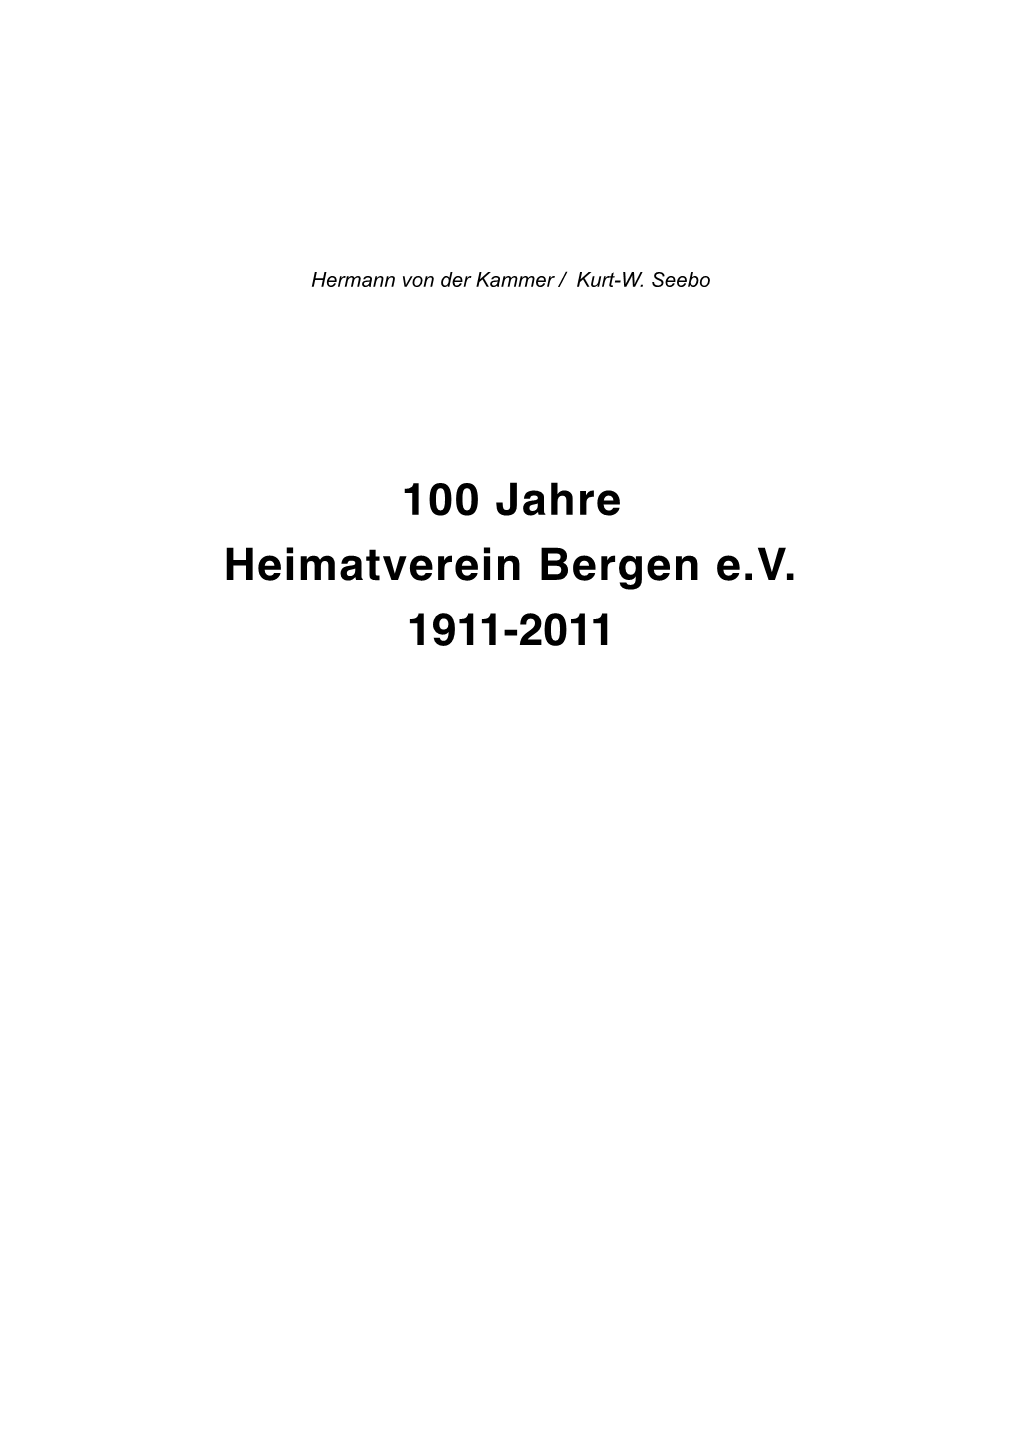 100 Jahre Heimatverein Bergen +